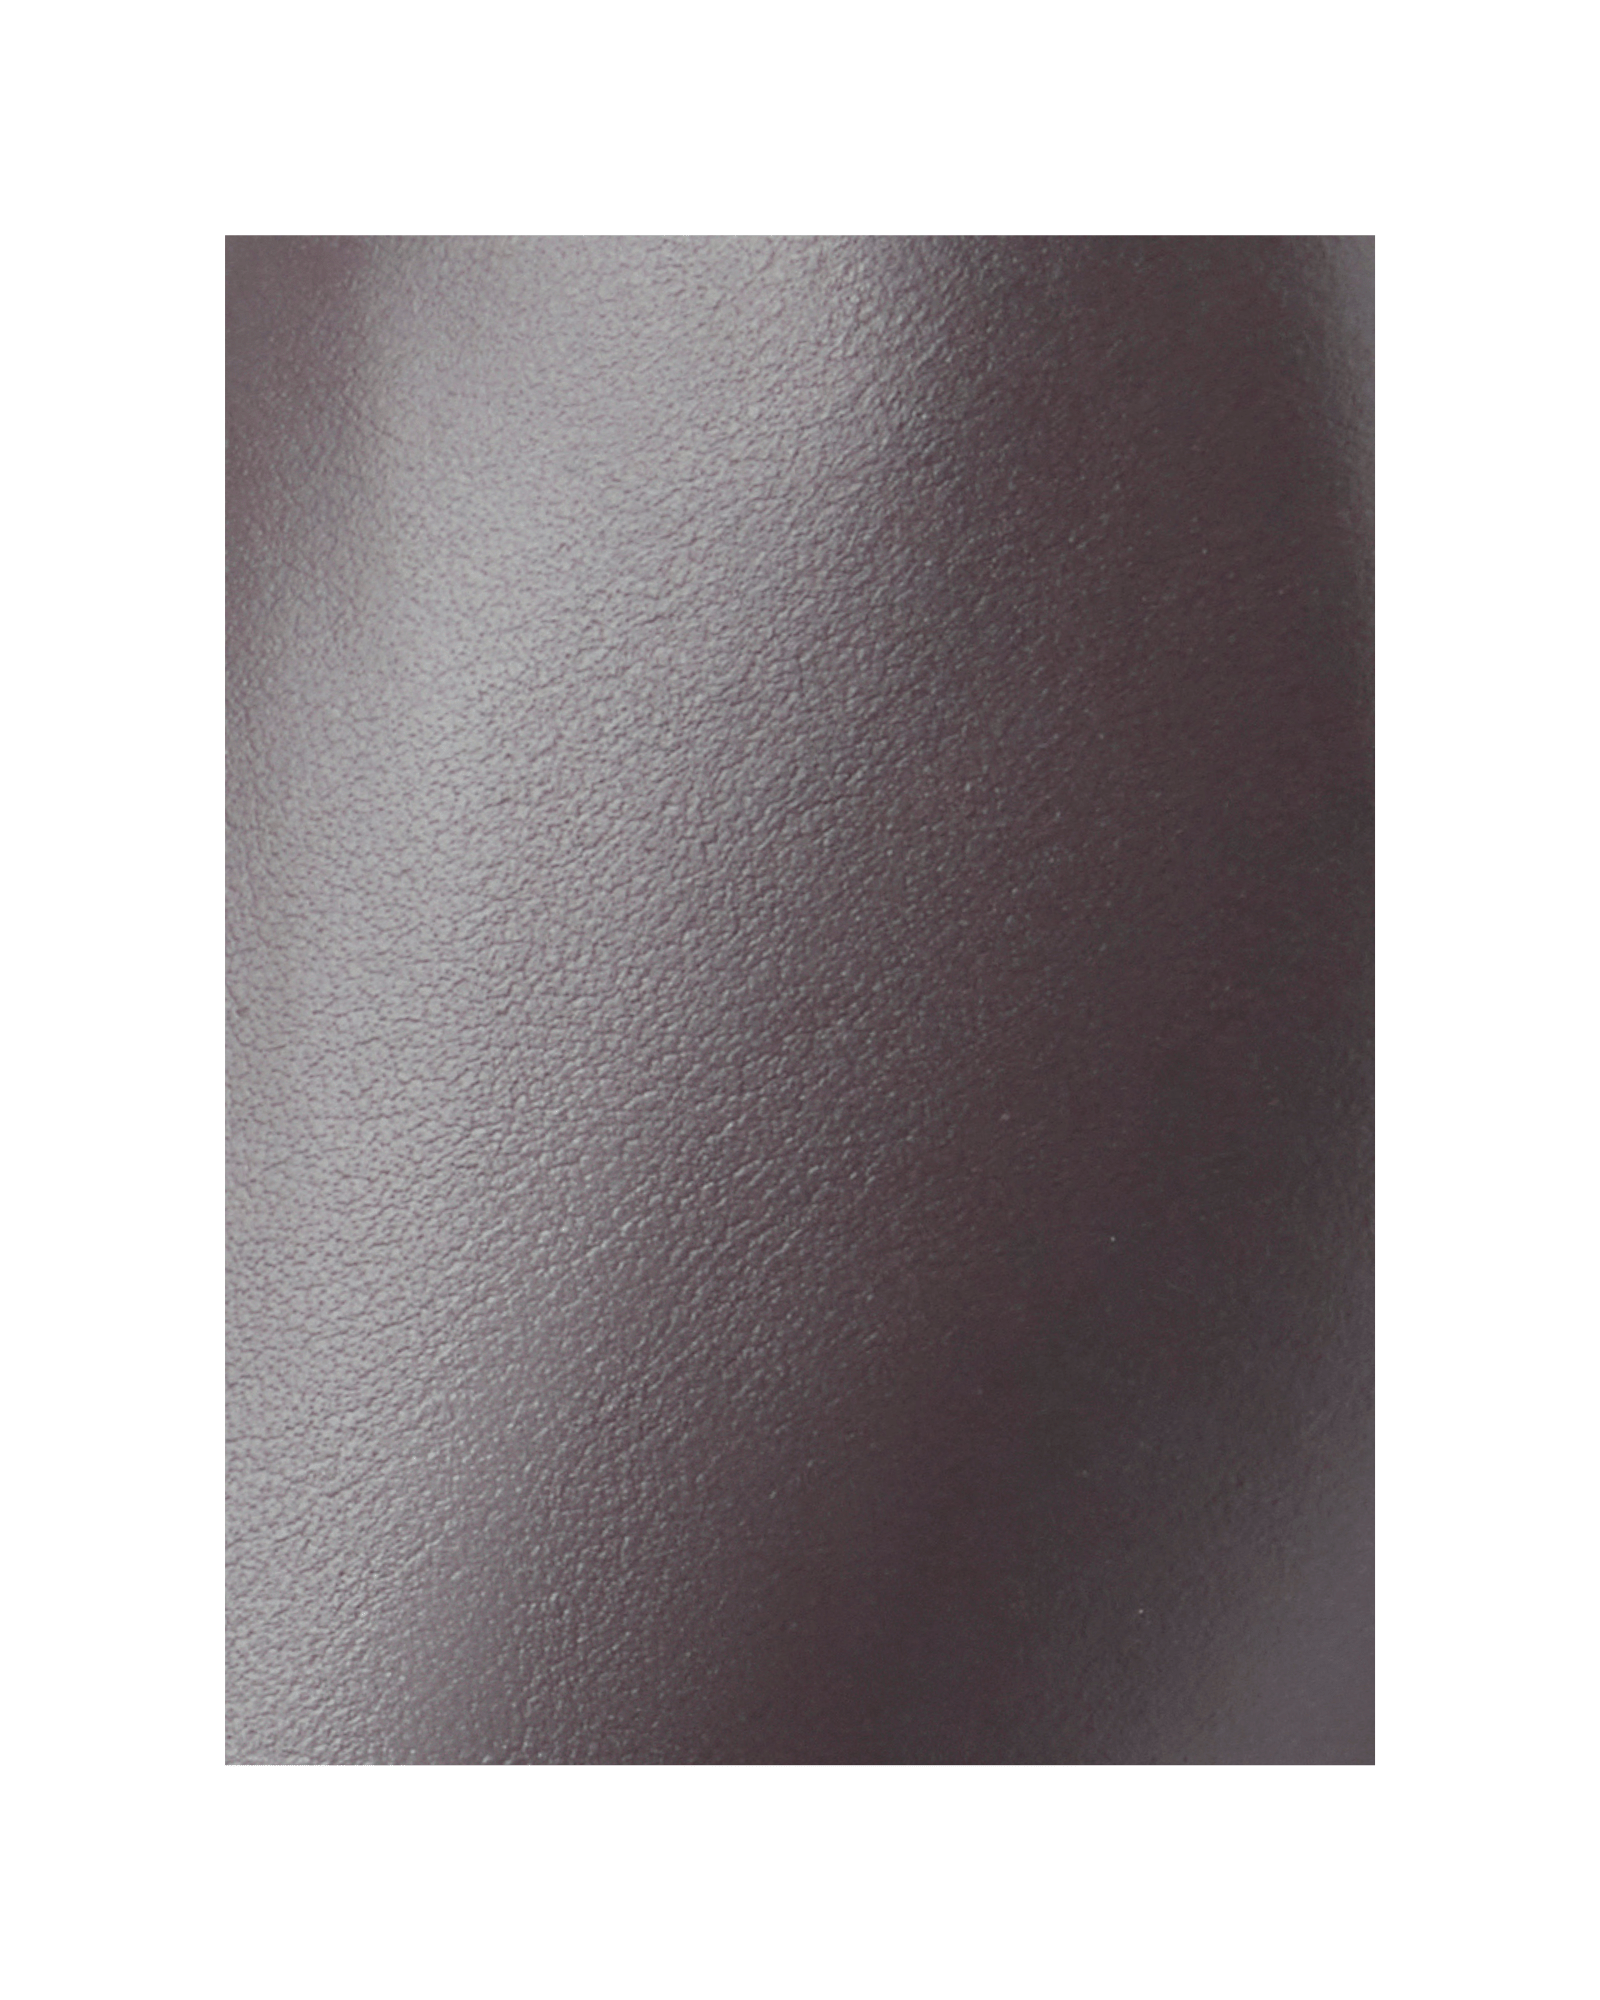 Mole Grey Leather image